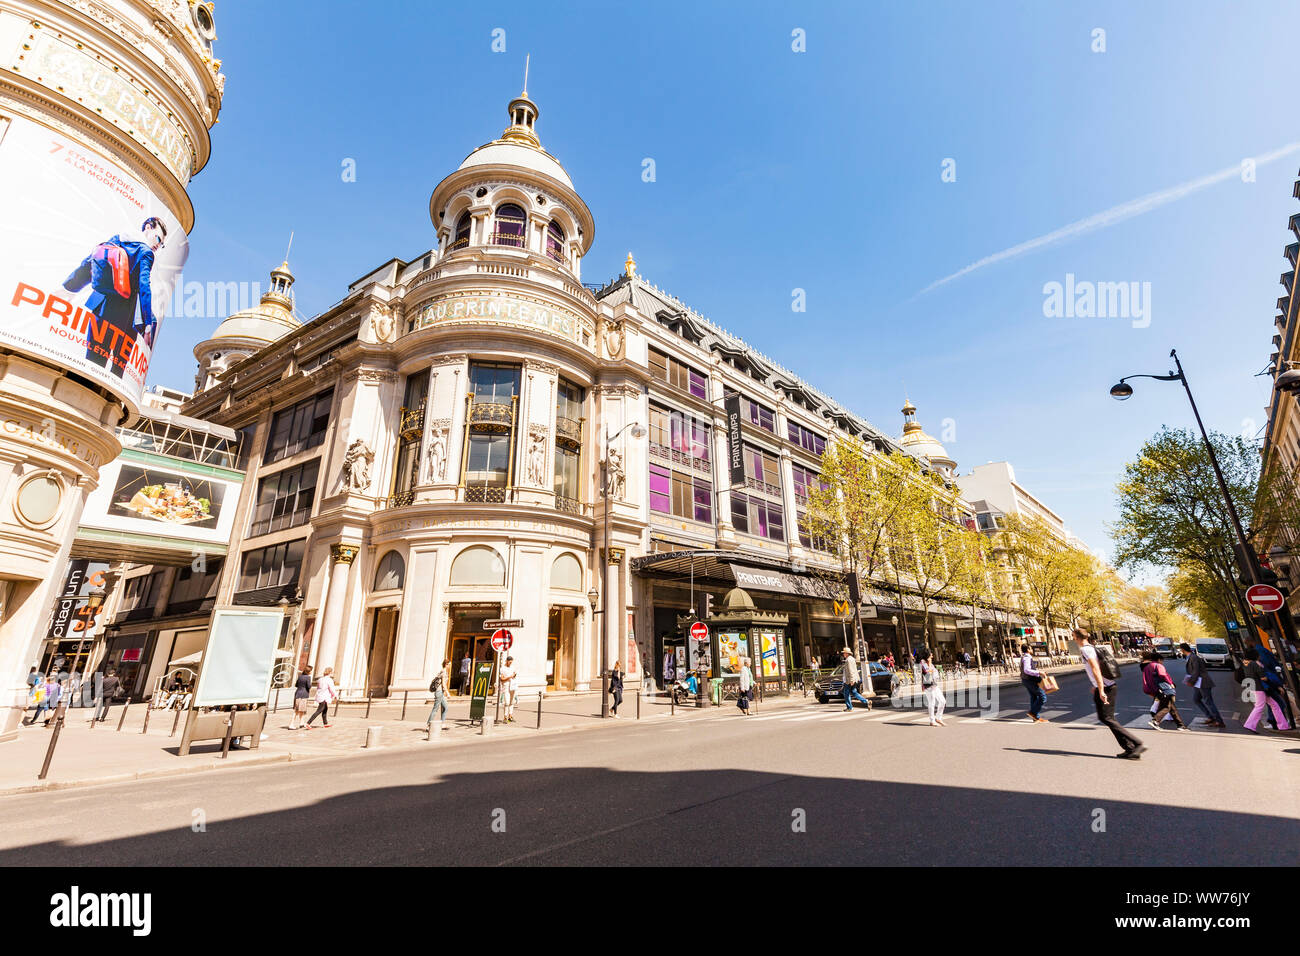 France, Paris, city centre, Boulevard Haussmann, Printemps department store, people Stock Photo